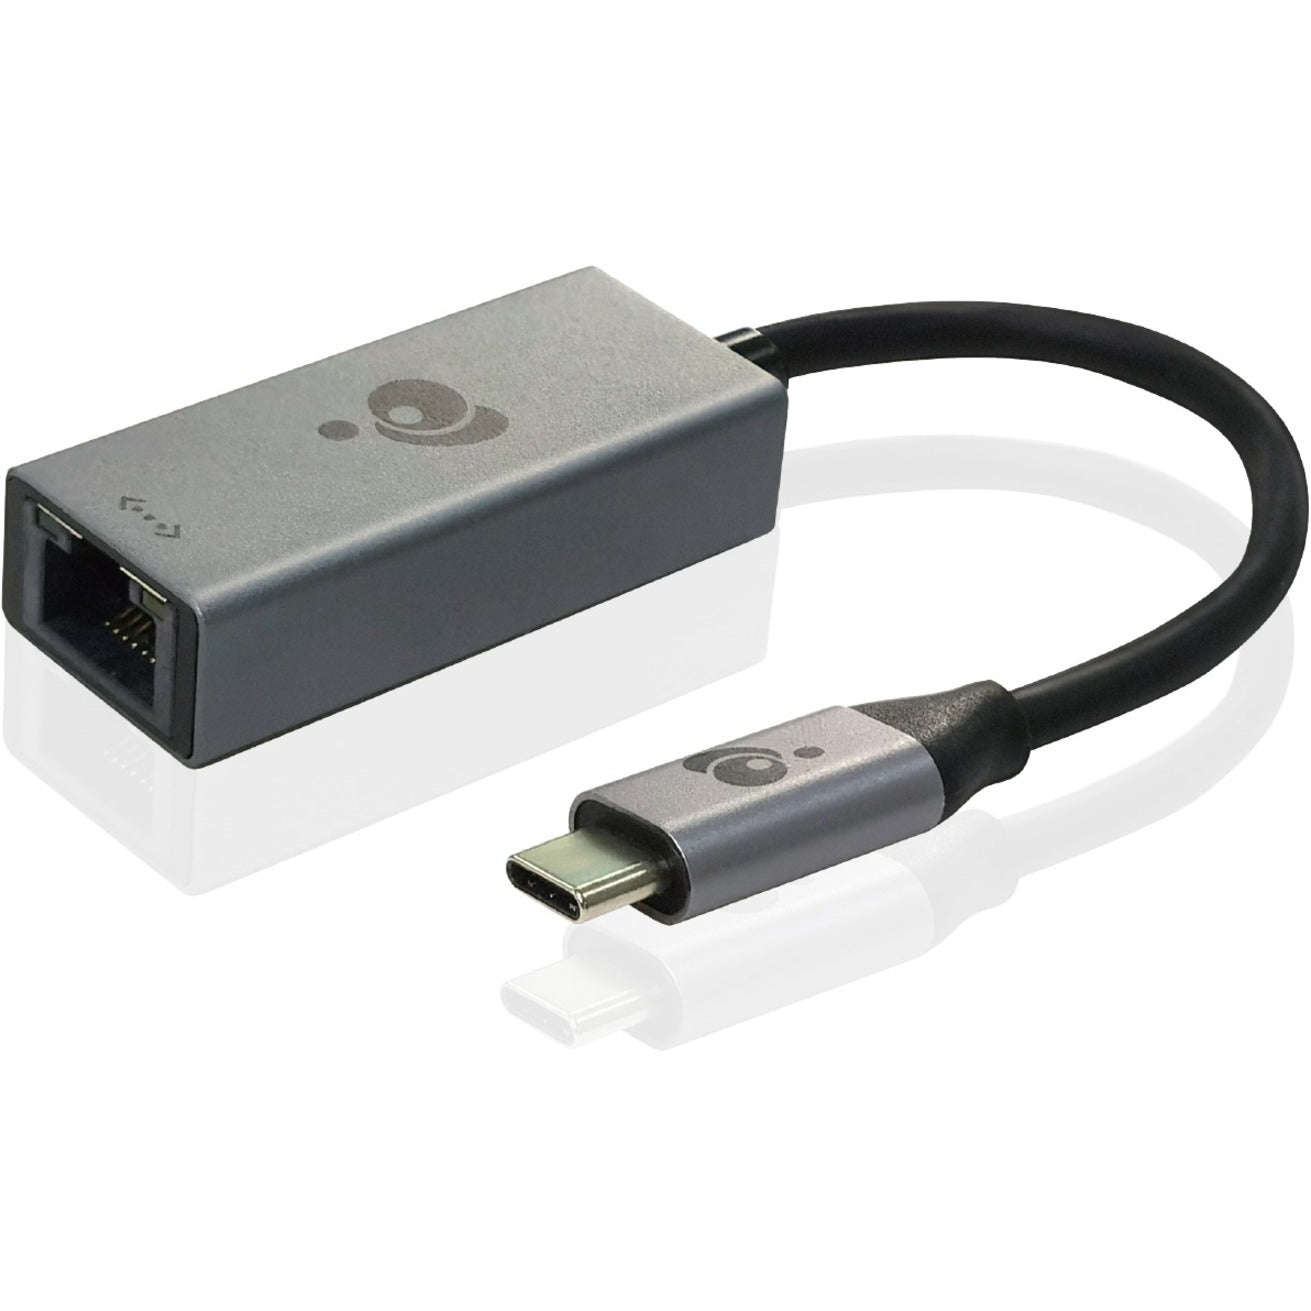 IOGEAR GUC3C01B GigaLinq Pro 3.1 USB 3.1 Type-C to Gigabit Ethernet Adapter High-Speed Network Connection  アイオージアー GUC3C01B GigaLinq プロ 3.1 USB 3.1 Type-C から Gigabit イーサネット アダプター、高速ネットワーク接続